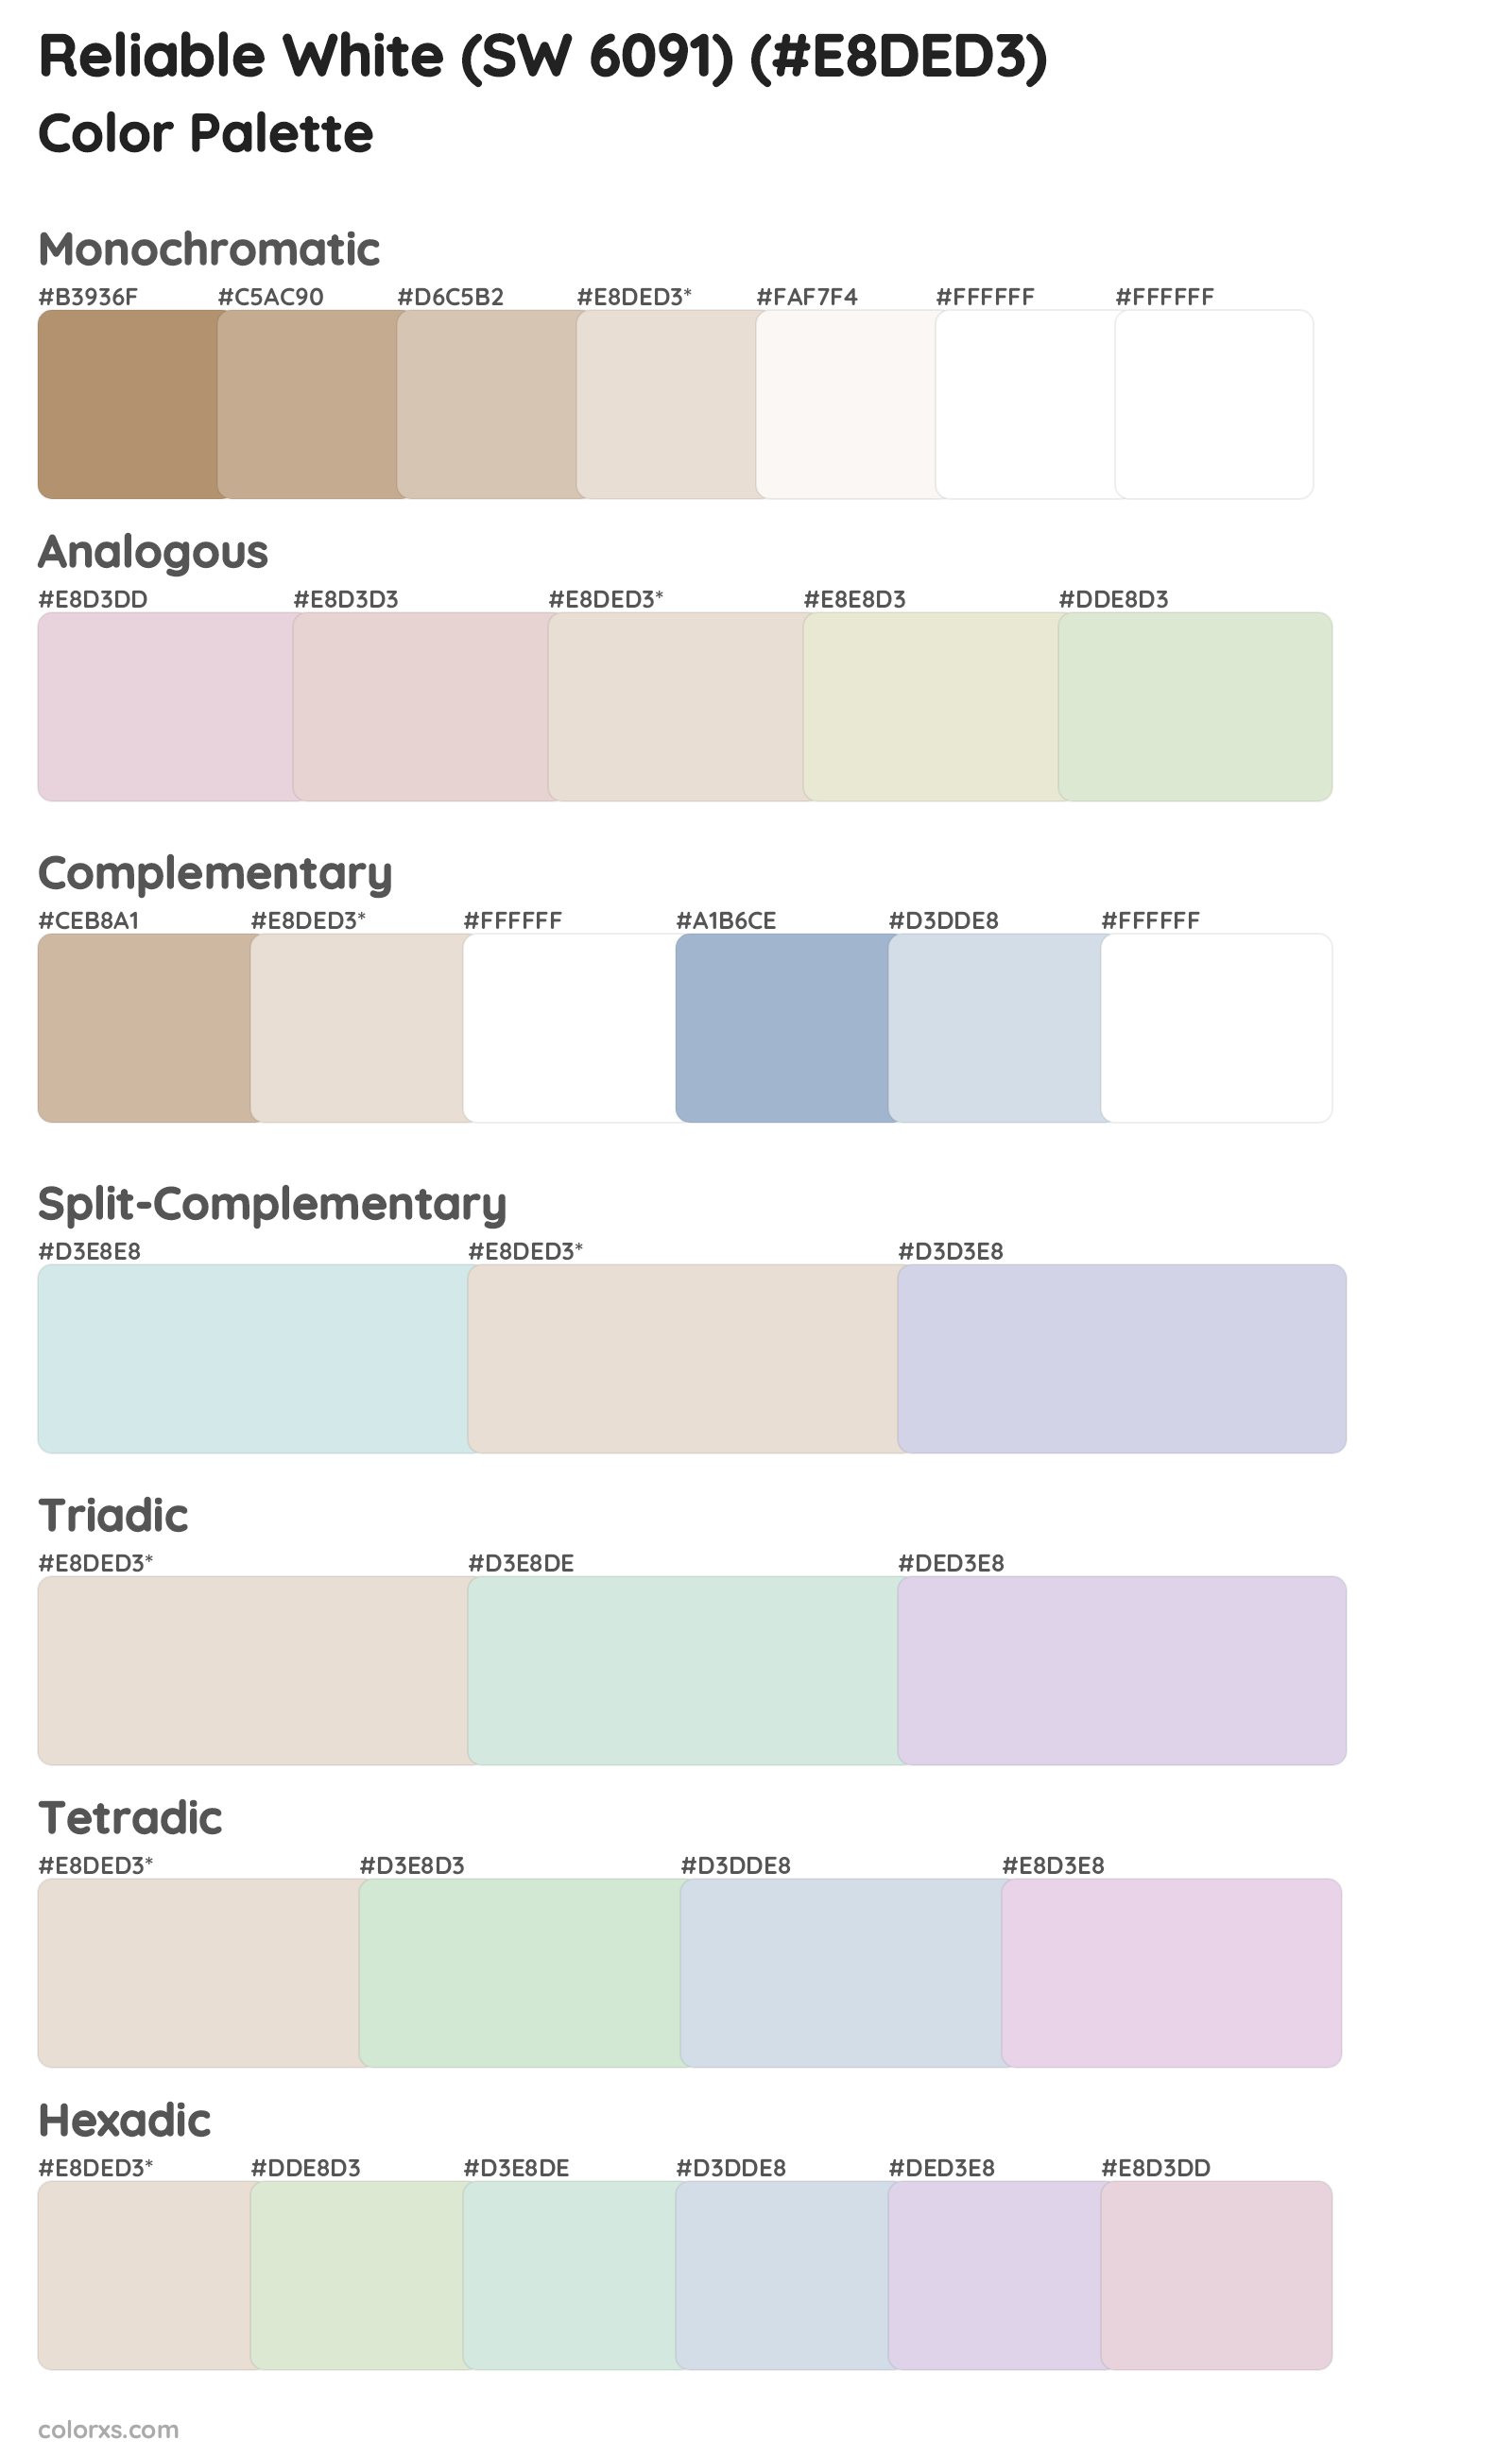 Reliable White (SW 6091) Color Scheme Palettes